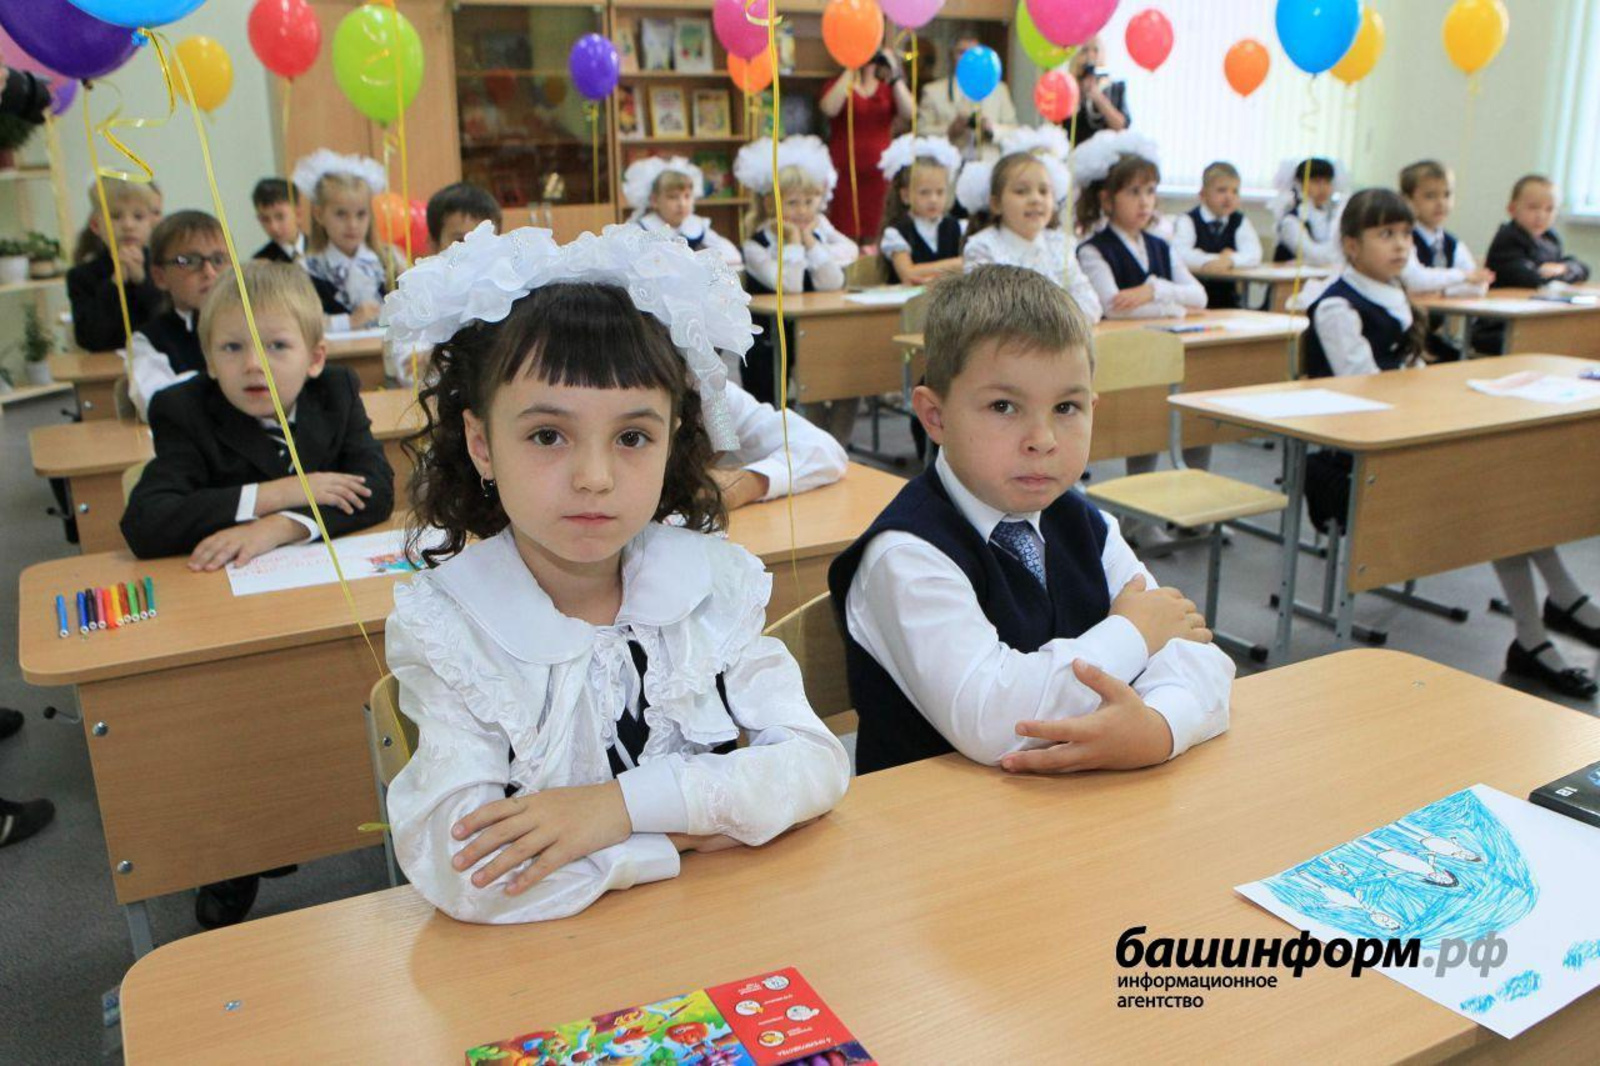 Принудительной вакцинации педагогов и школьников не будет - Минпросвещения России